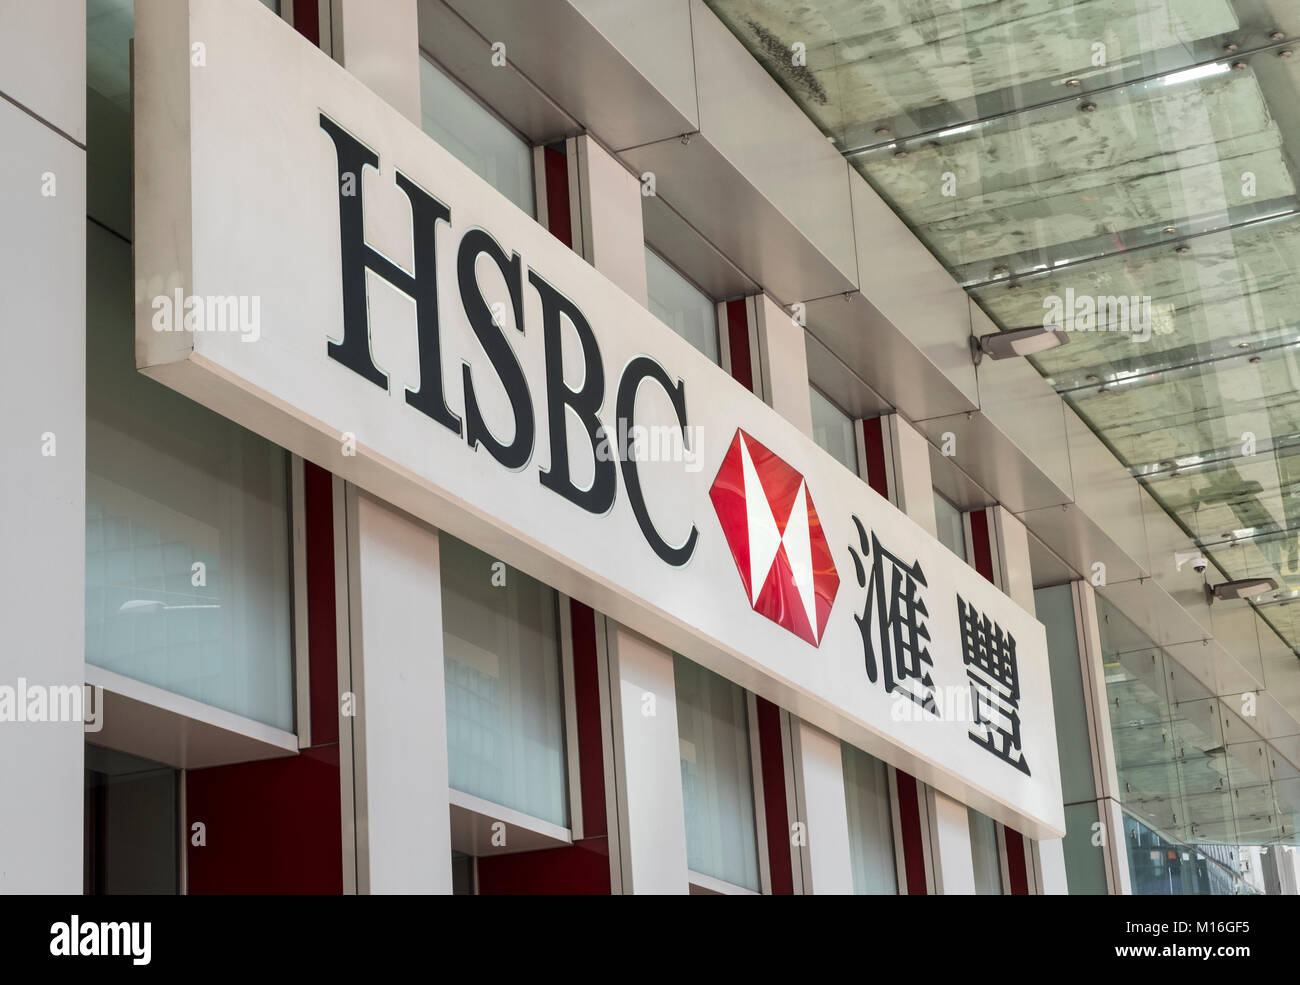 Hong Kong, Hong Kong - 21. Januar 2018: HSBC Hongkong und Shanghai Bank Inschrift an der Wand. HSBC ist eine der größten Bankengruppen. Stockfoto